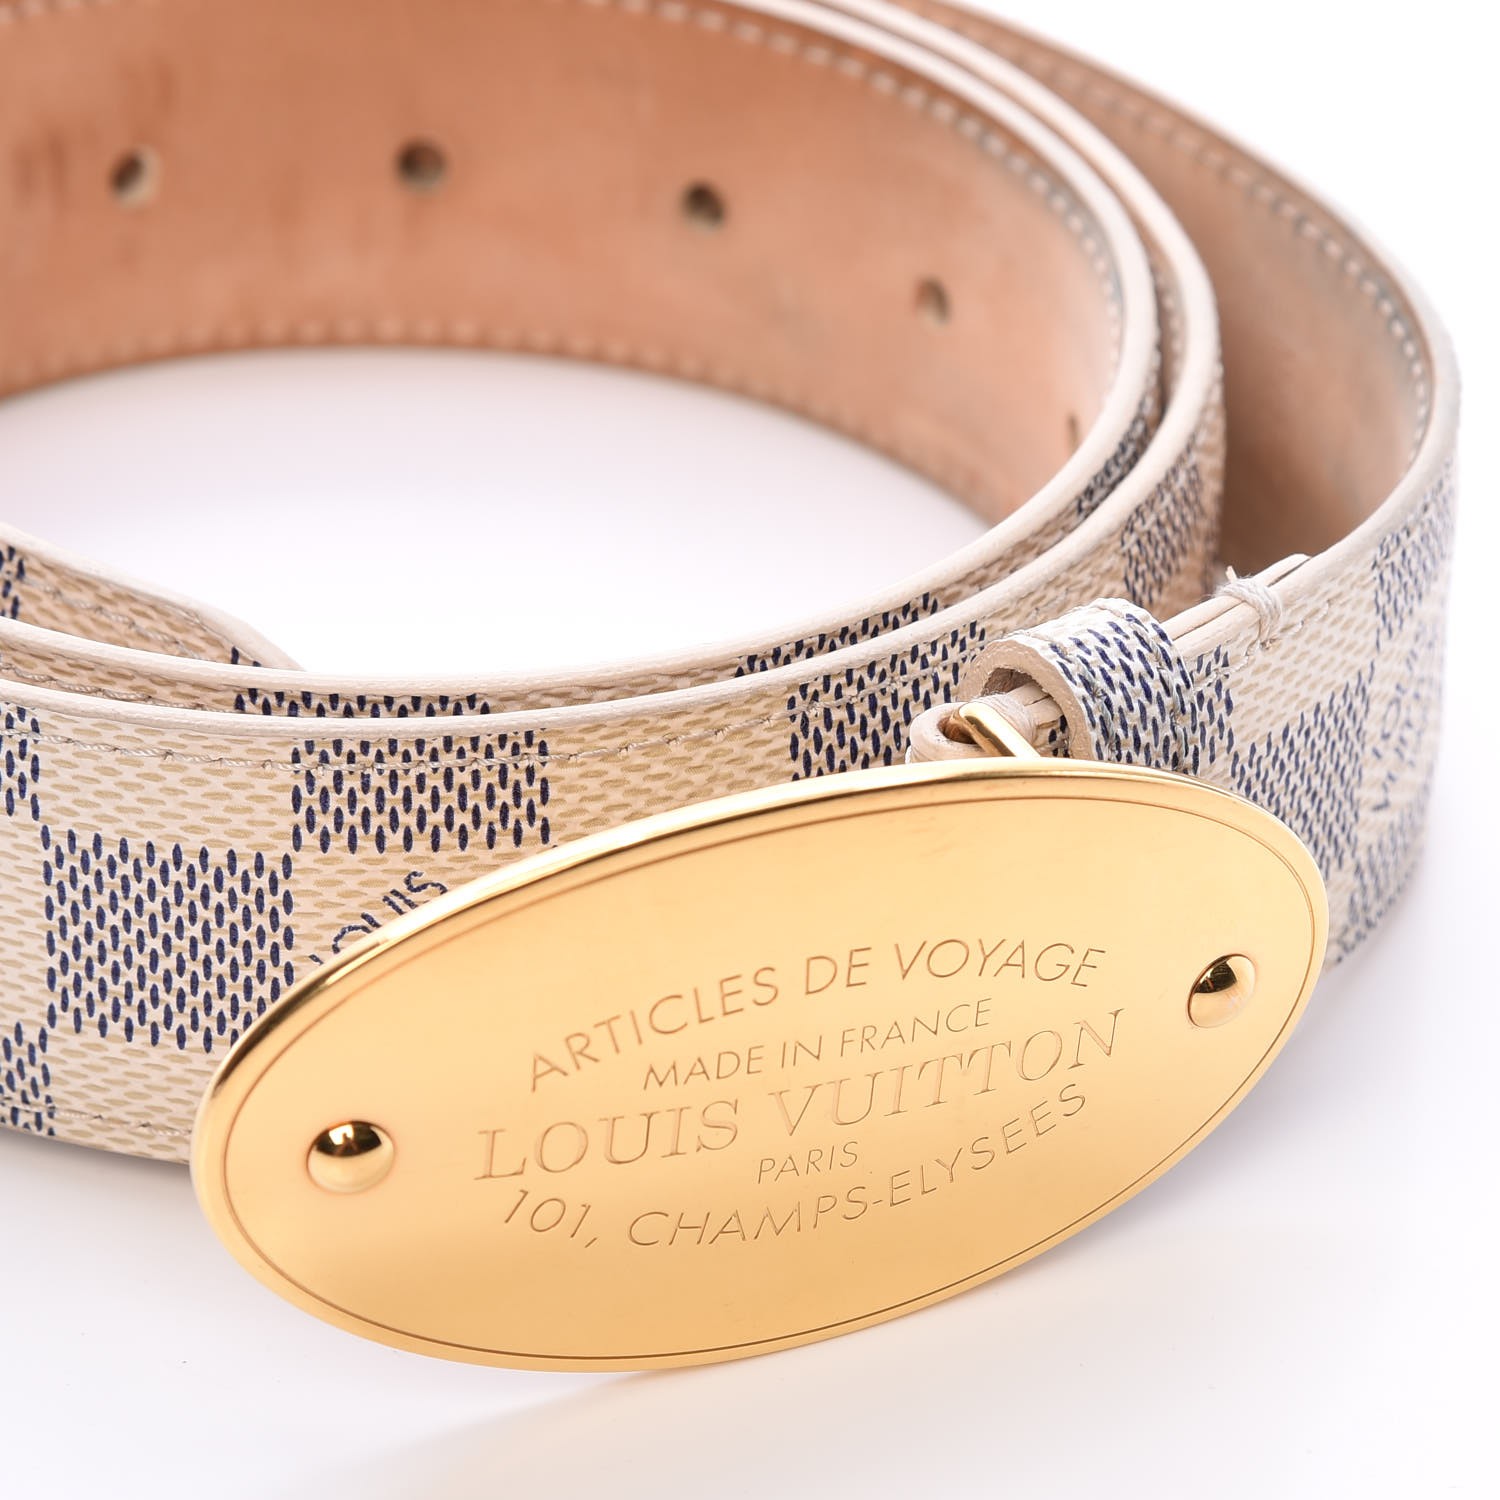 Louis Vuitton, Accessories, Authentic Louis Vuitton Damier Azur Voyage Belt  32